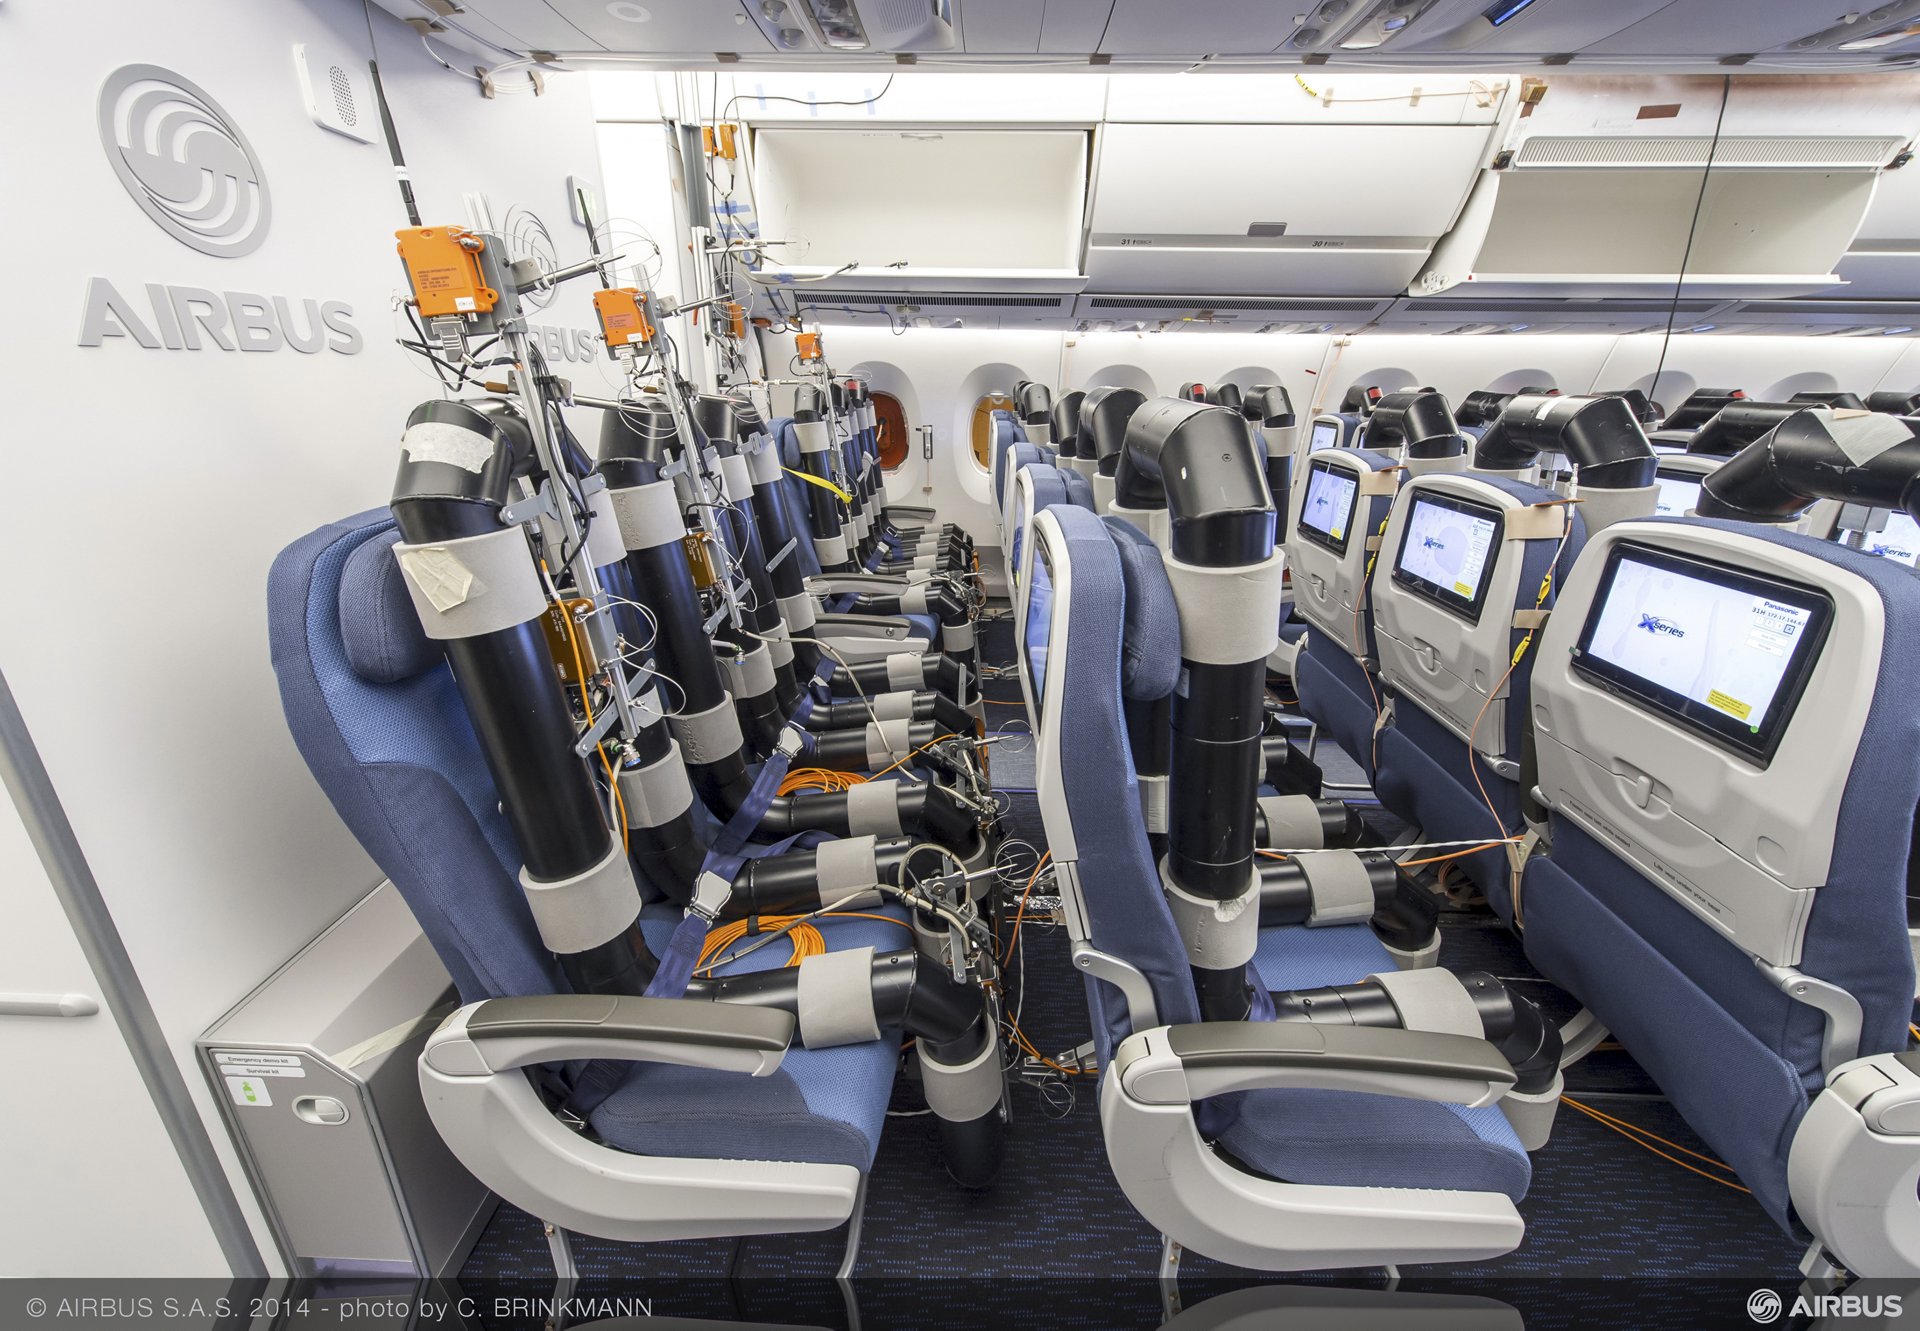 Aircraft Interiors Expo 2014 Airbus Prasentiert Komfort